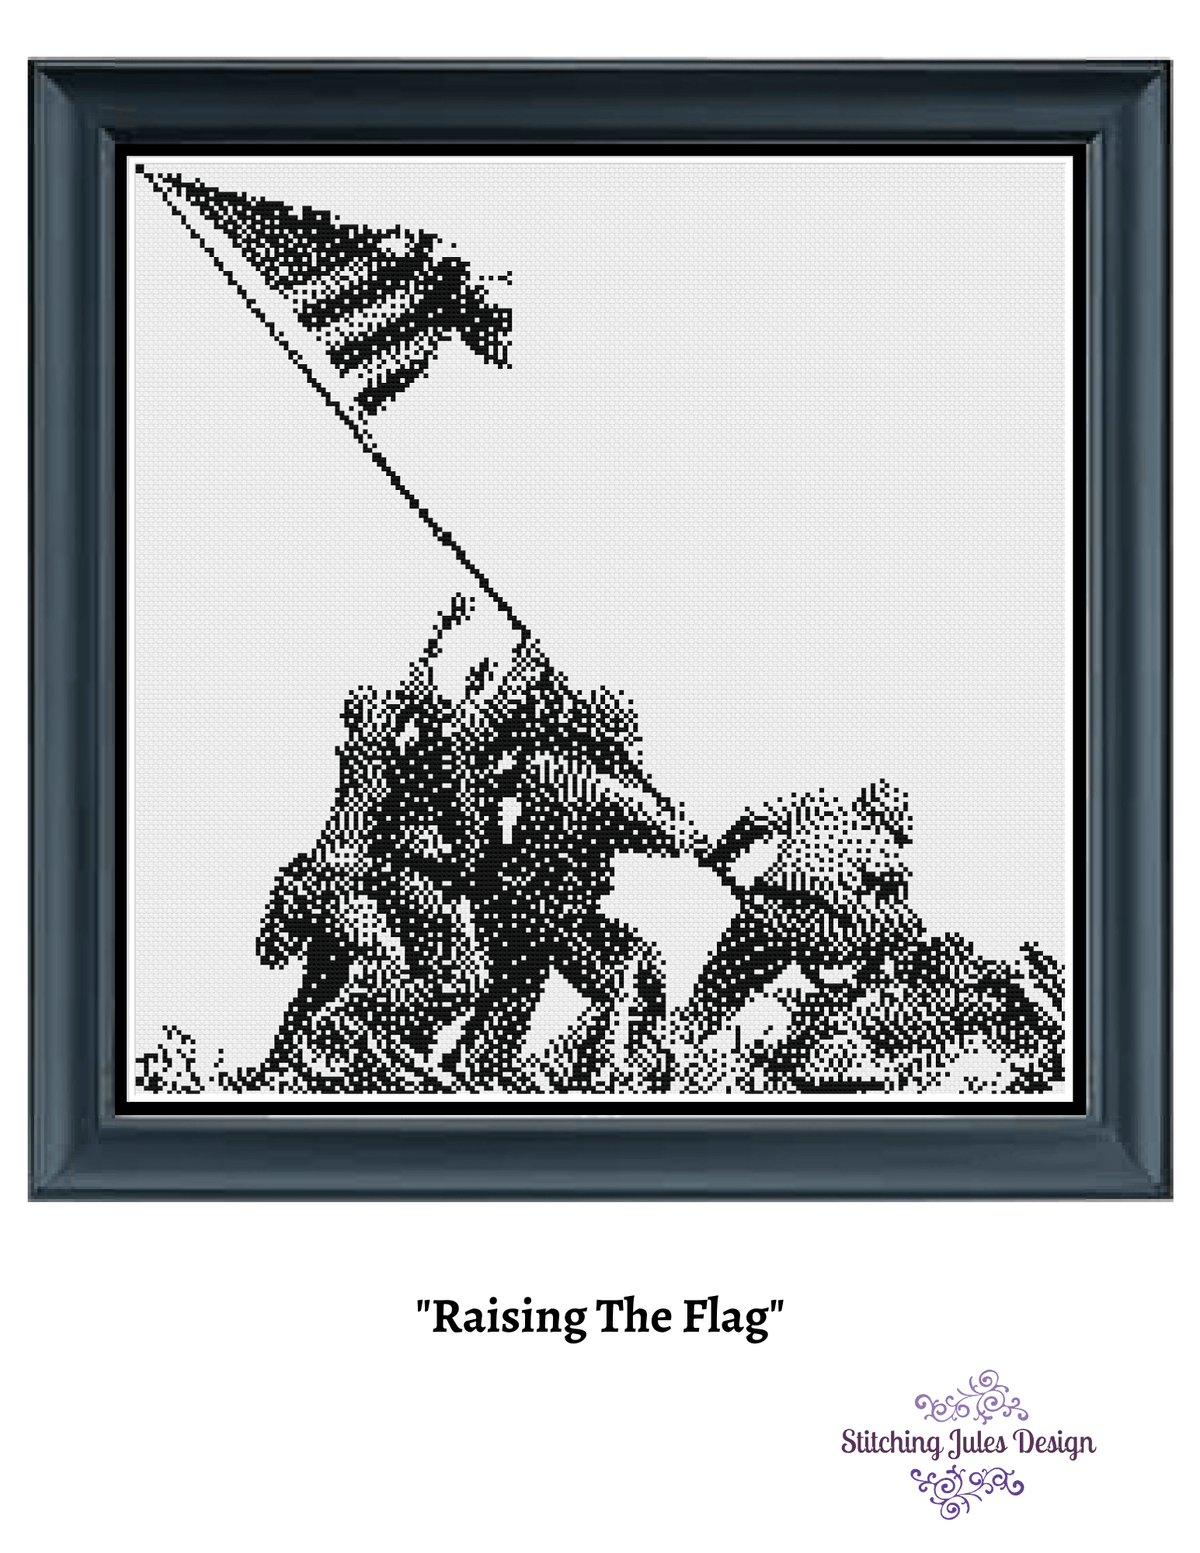 Stitching Jules Design Cross Stitch Pattern Raising The Flag On Iwo Jima Digital Downloadable Cross Stitch Pattern